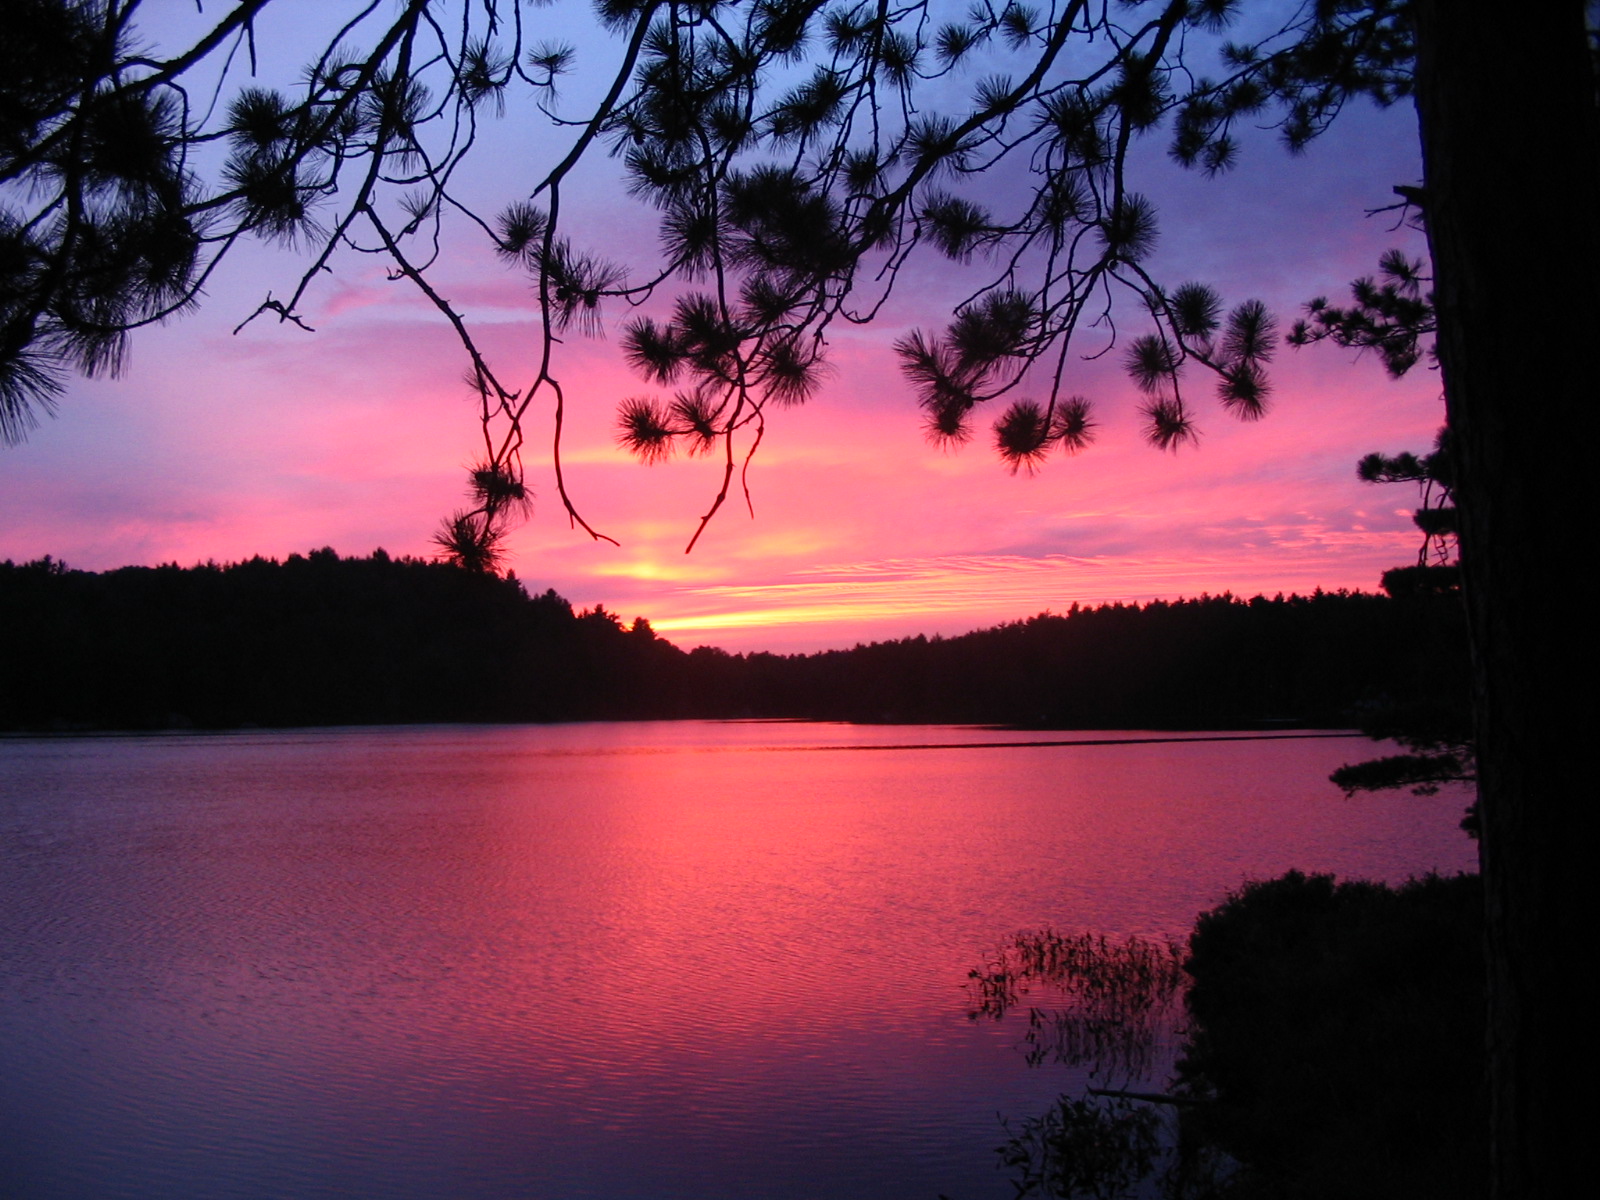 Sunset at Essens Lake, Bon Echo Provincial Park